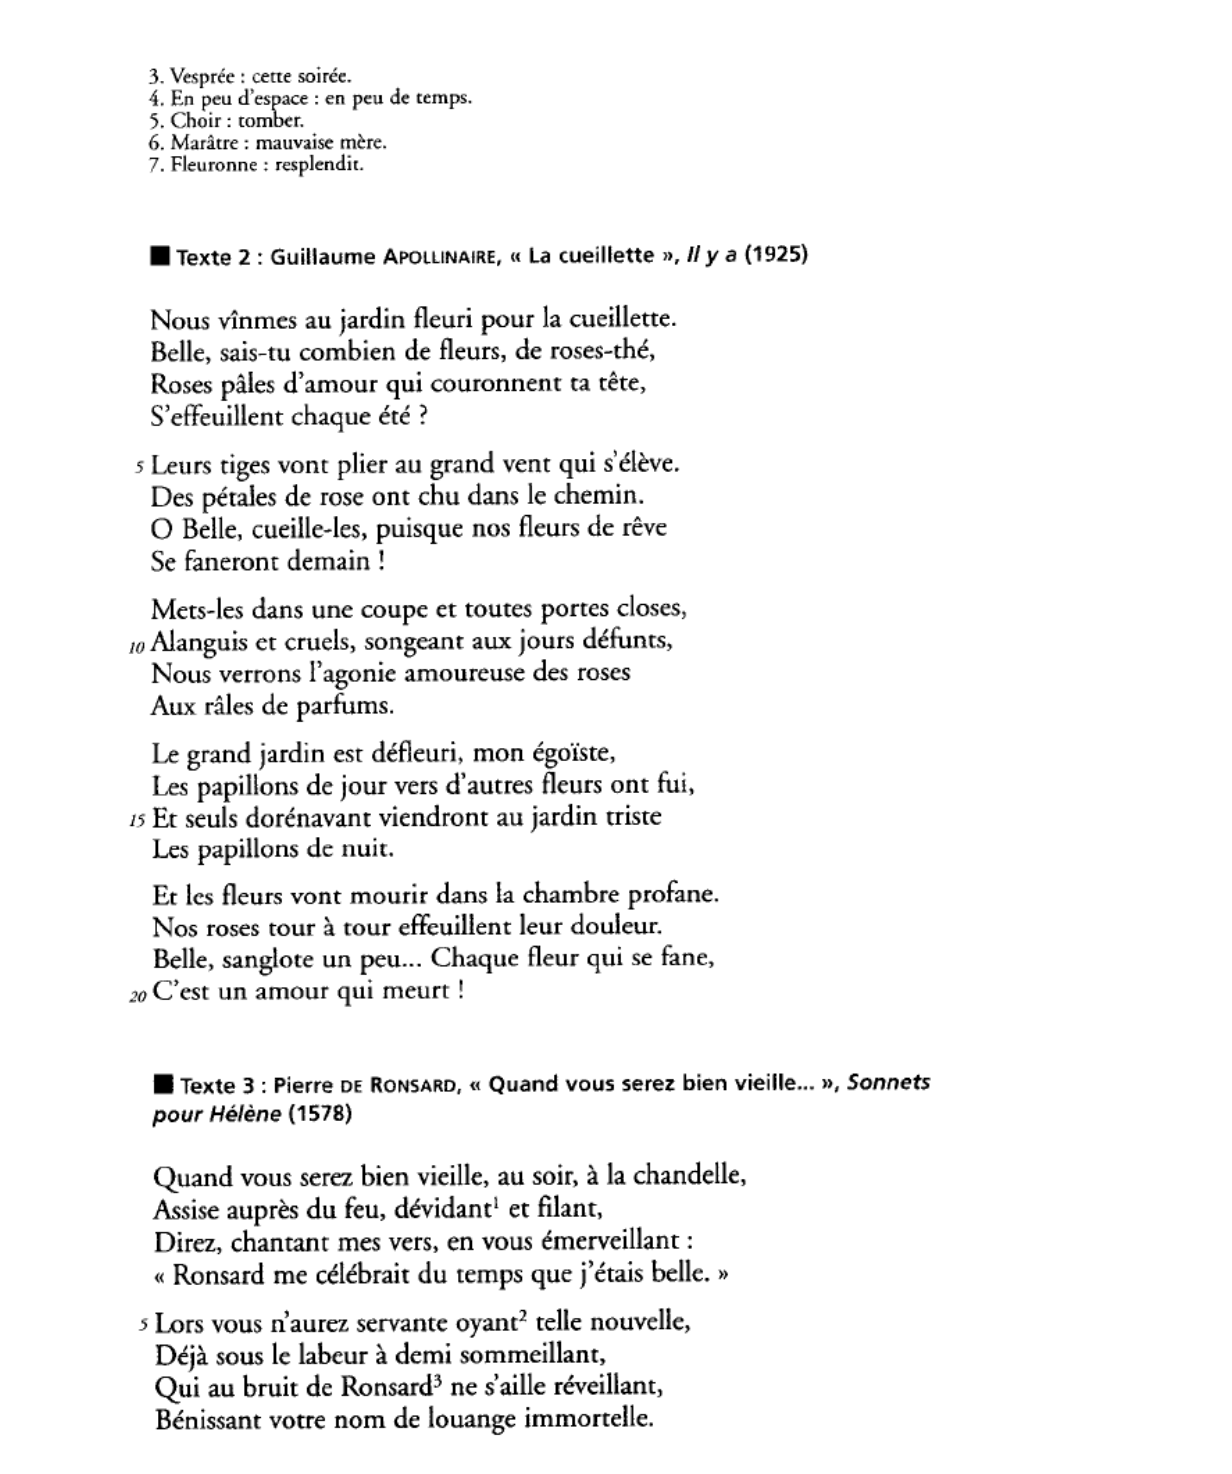 Prévisualisation du document Vous proposerez un commentaire comparé du poème de Ronsard, « Quand vous serez bien vieille » (texte 3) et de l’extrait du poème d’Apollinaire, « Adieux » (texte 4).